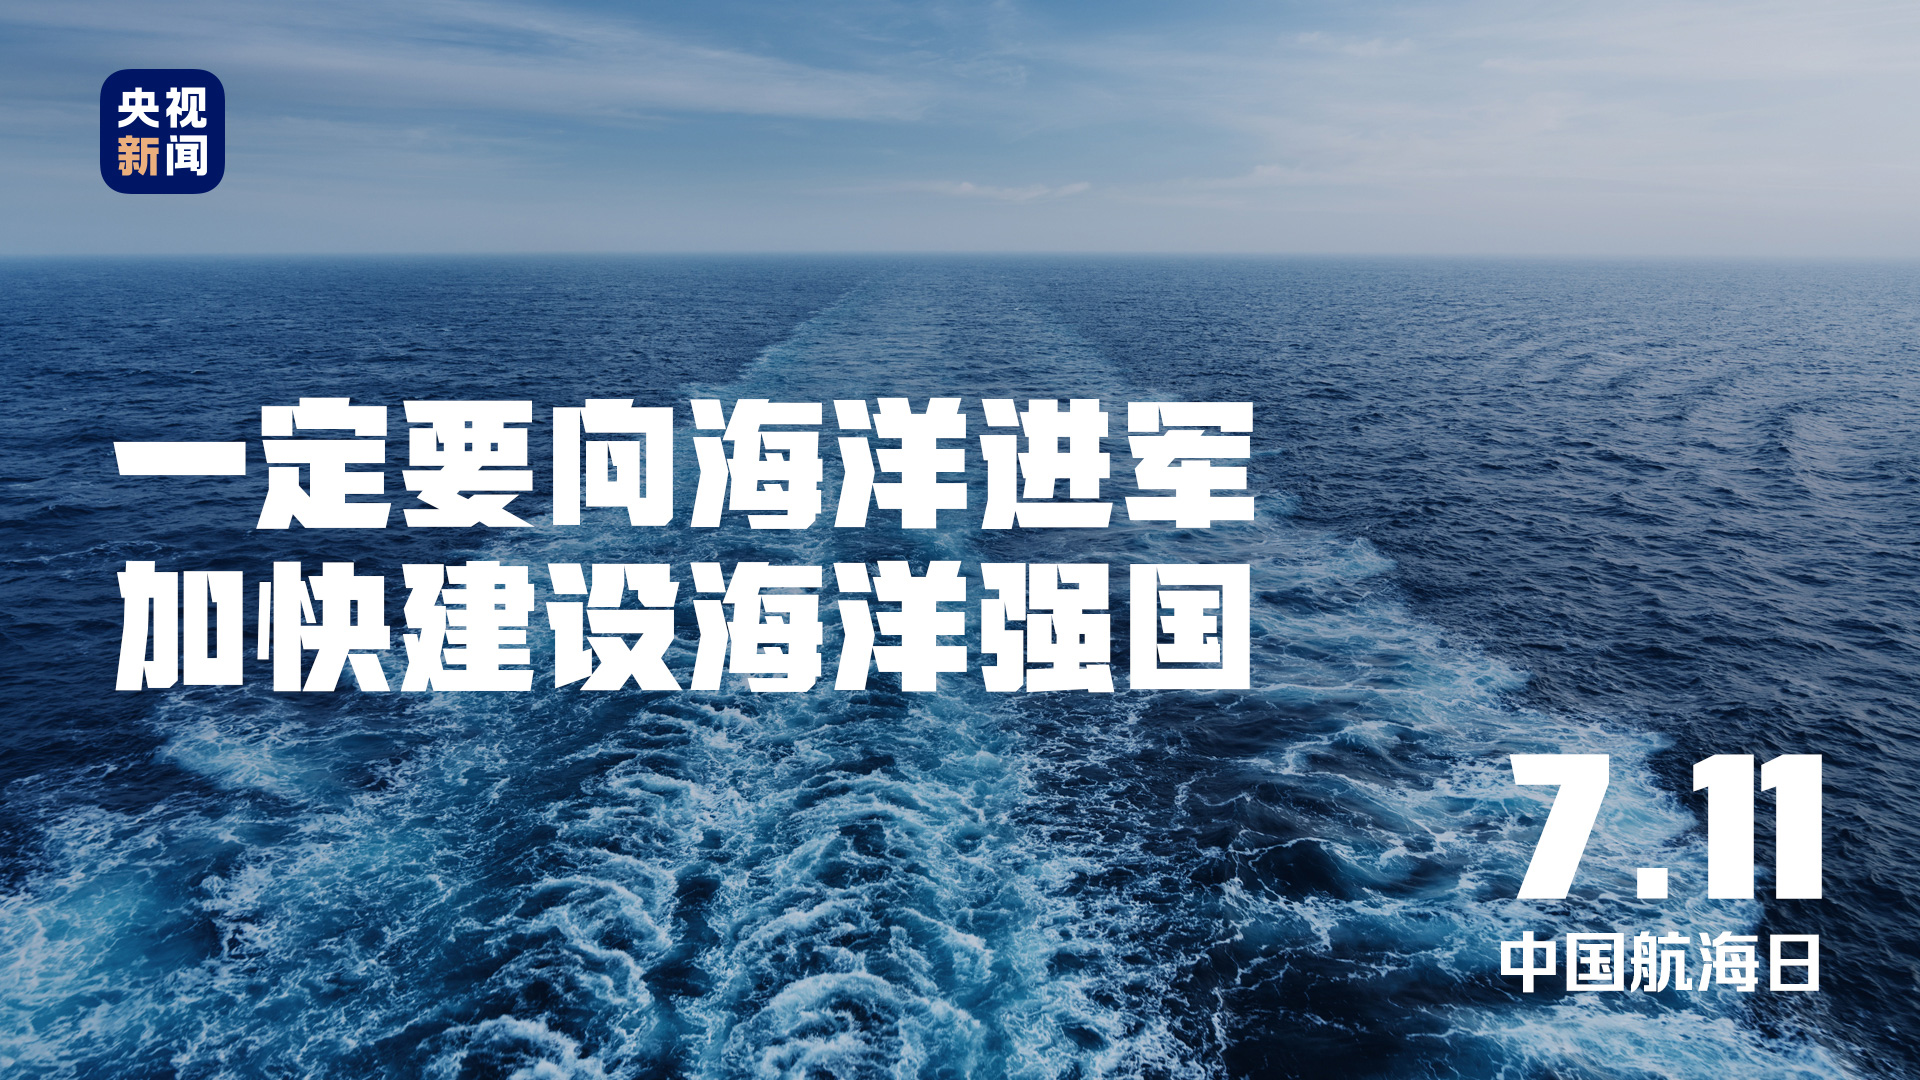 落实海洋可持续发展目标……中国一直在行动